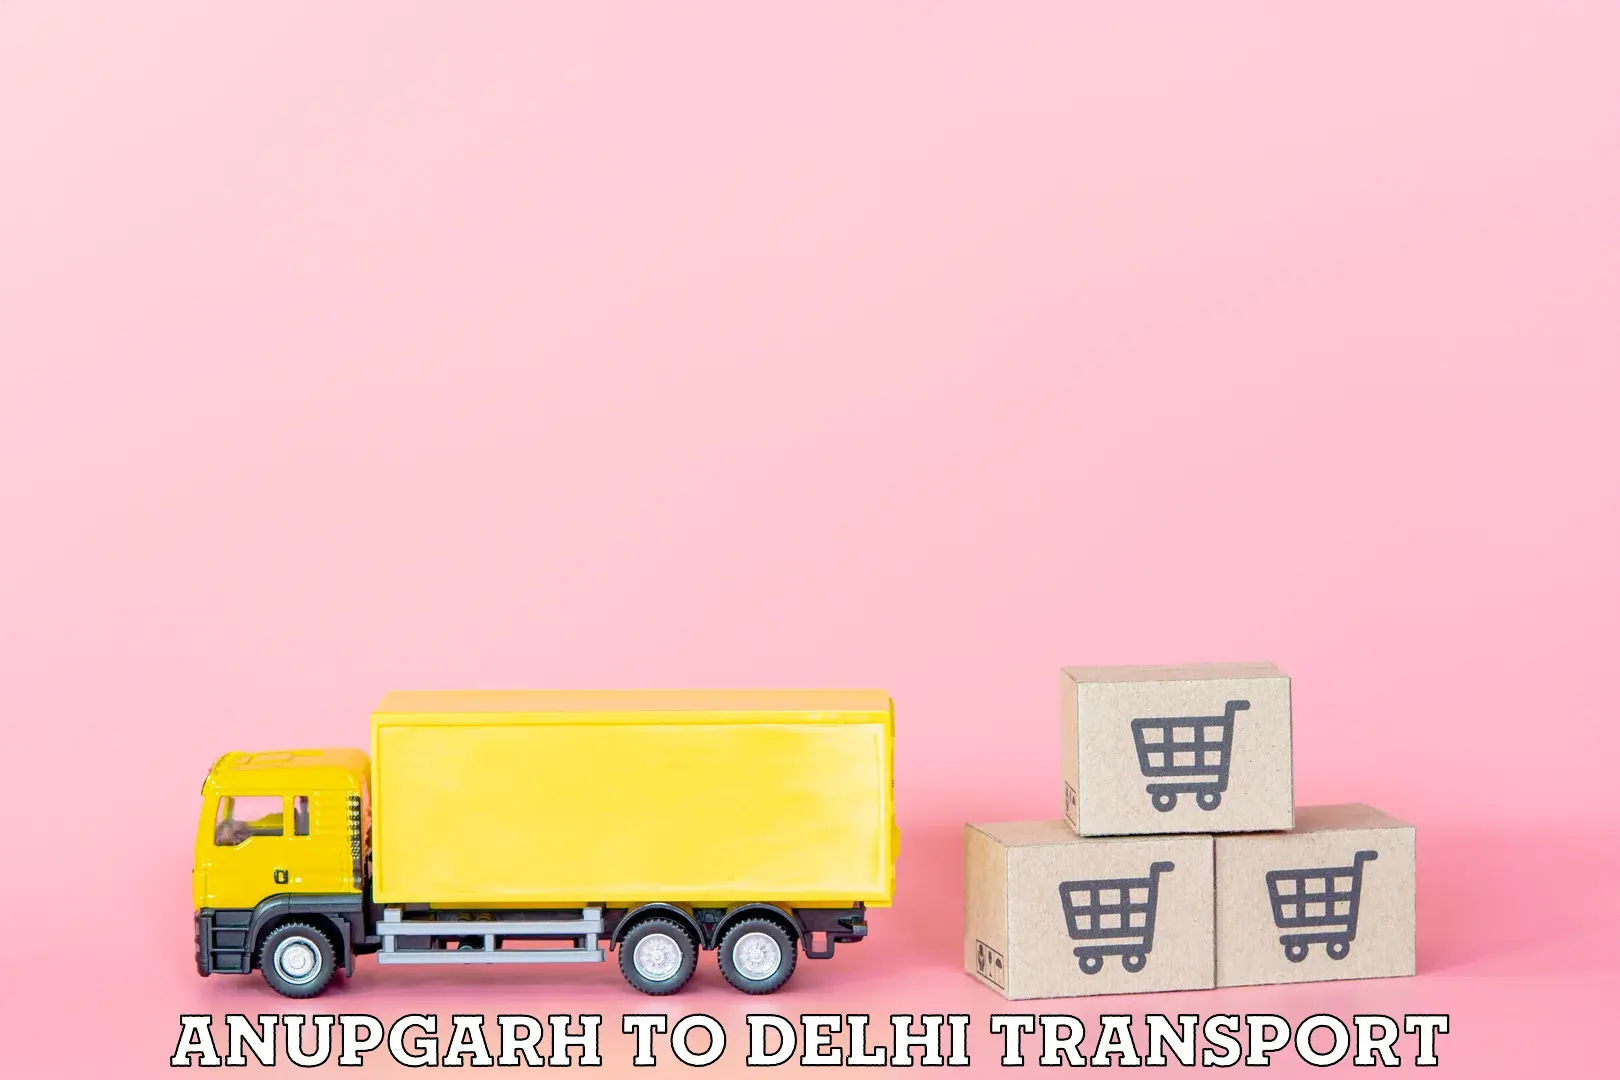 Transport in sharing Anupgarh to Delhi